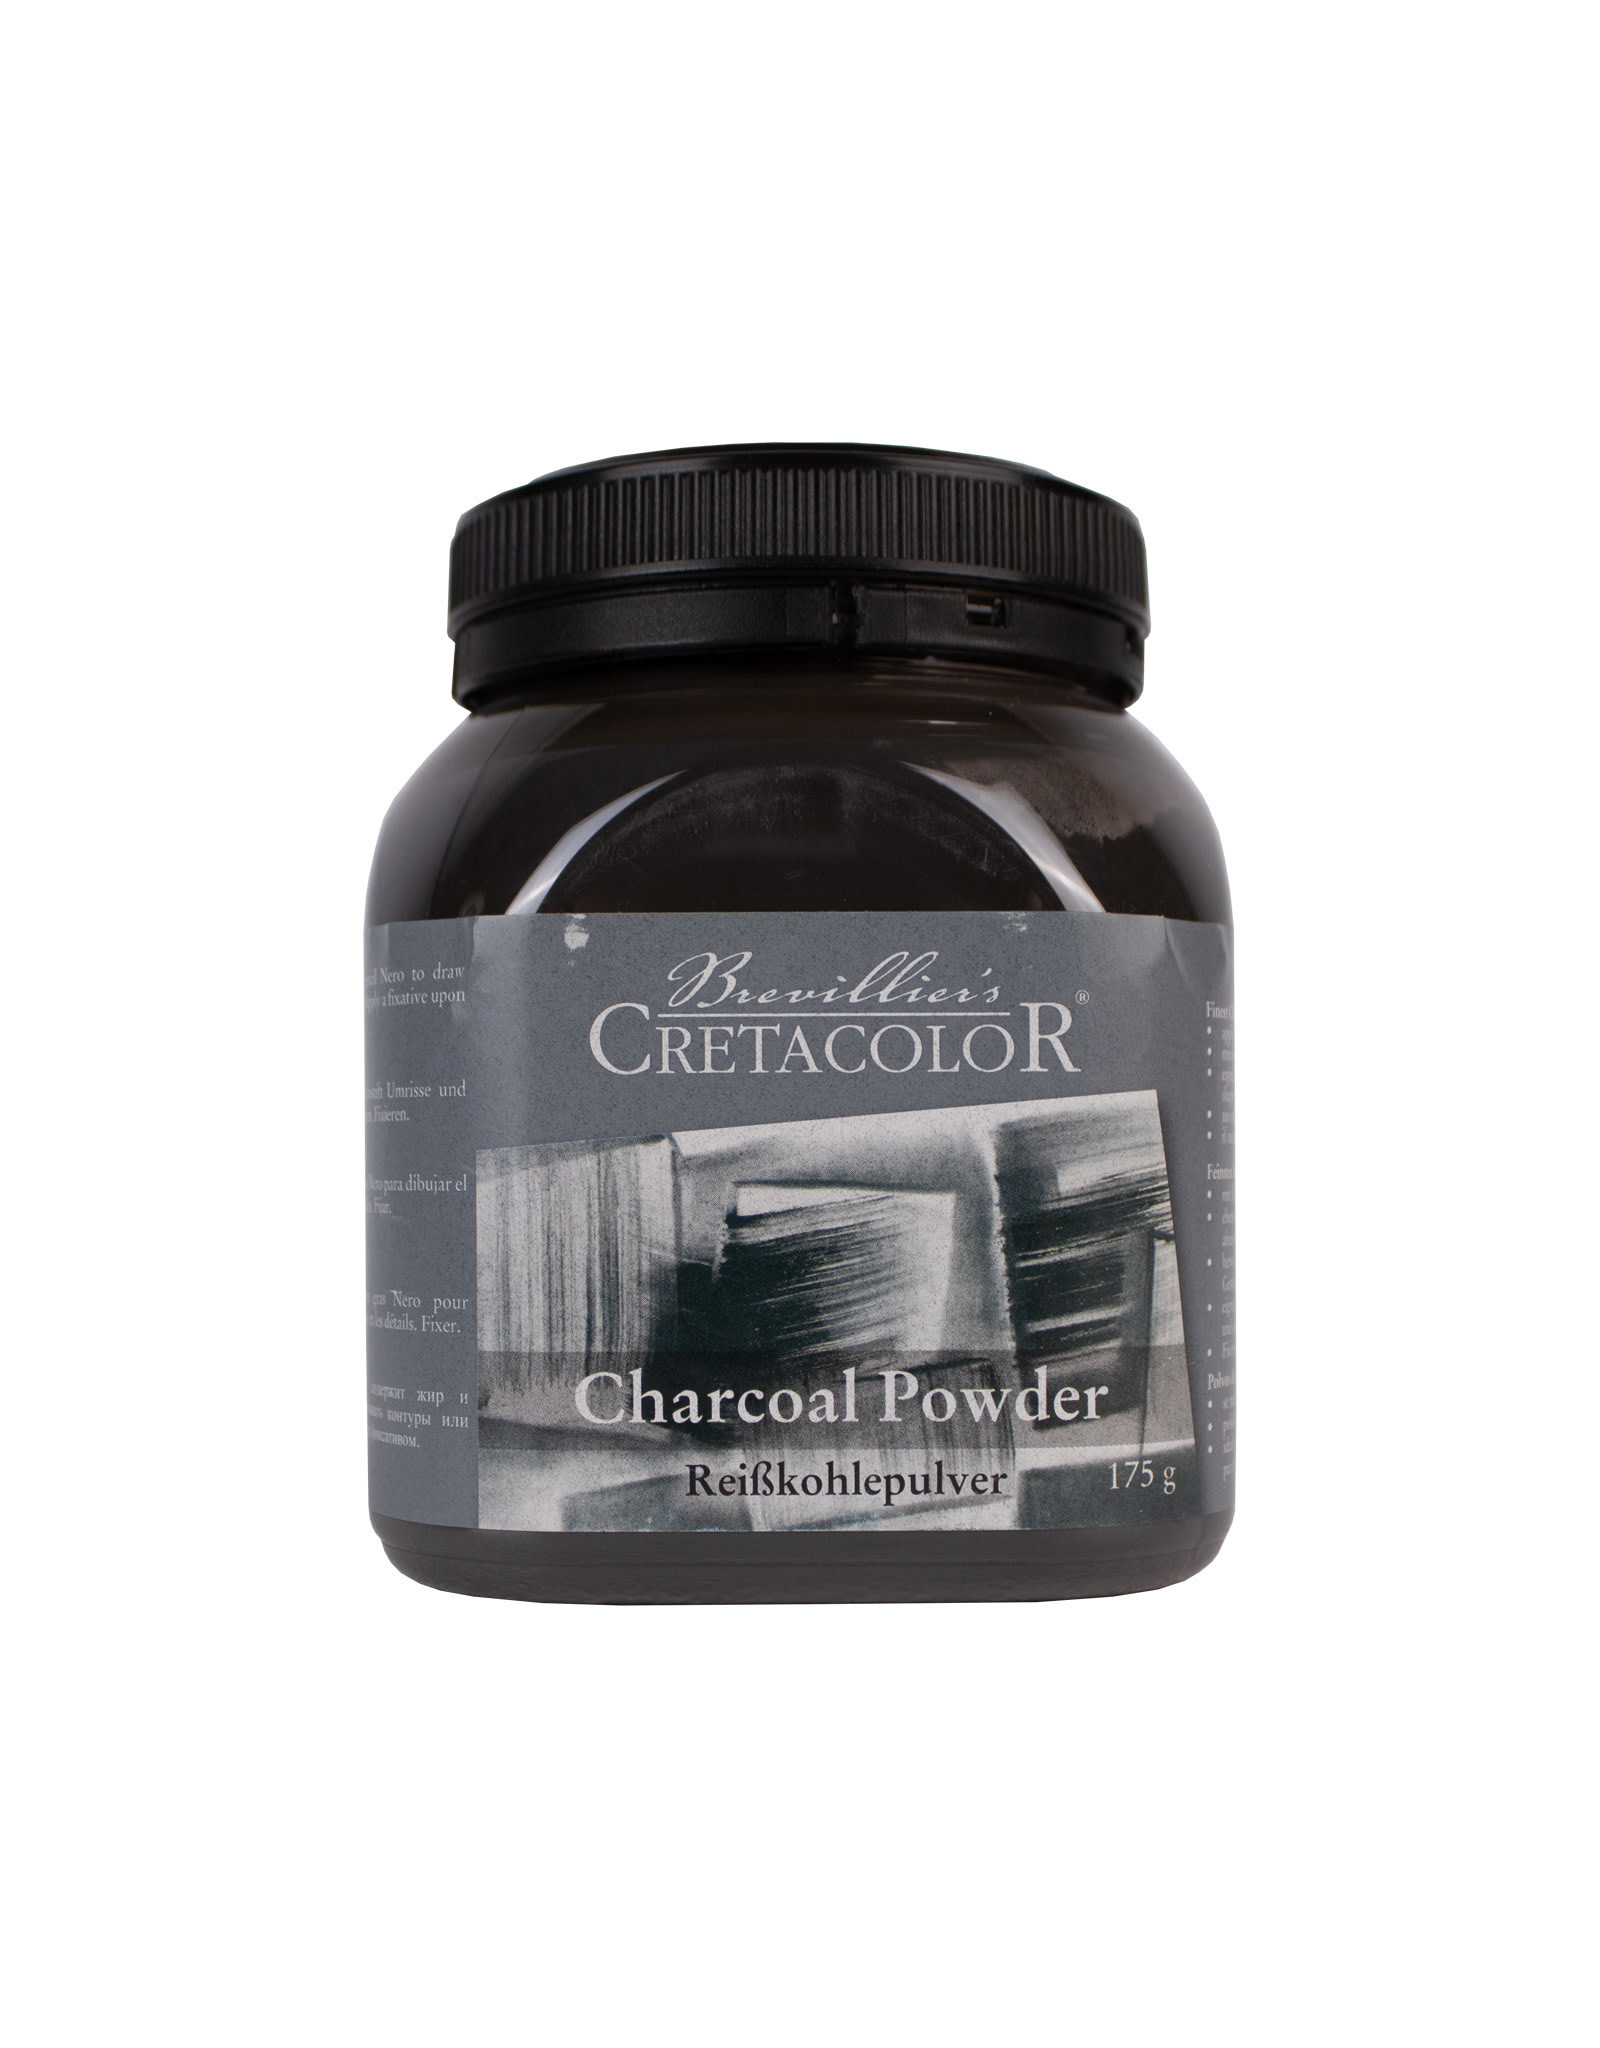 Cretacolor Cretacolor Charcoal Powder 175g Jar